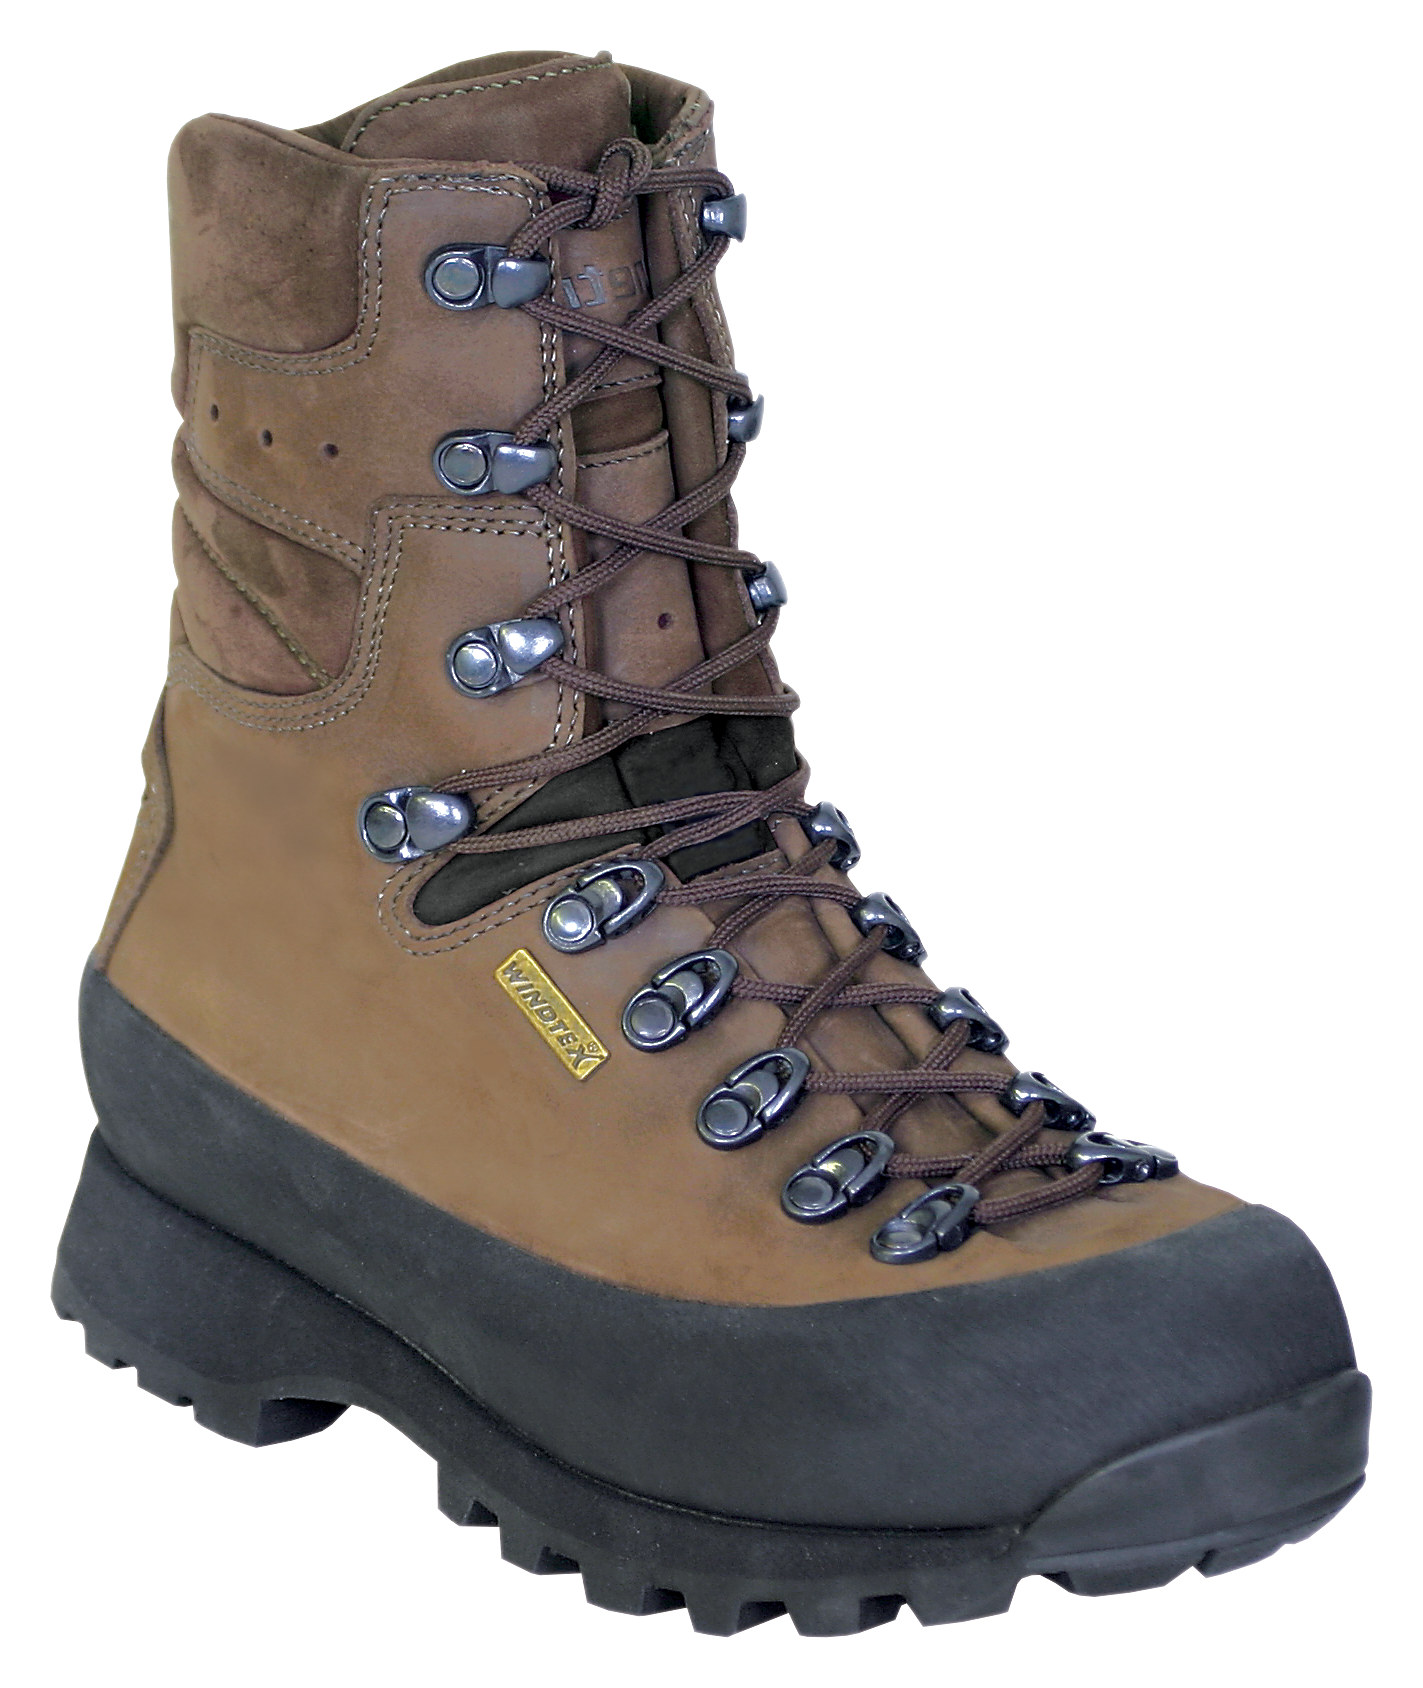 Kenetrek Hiker Waterproof Hiking Boots for Ladies - Brown -  8M